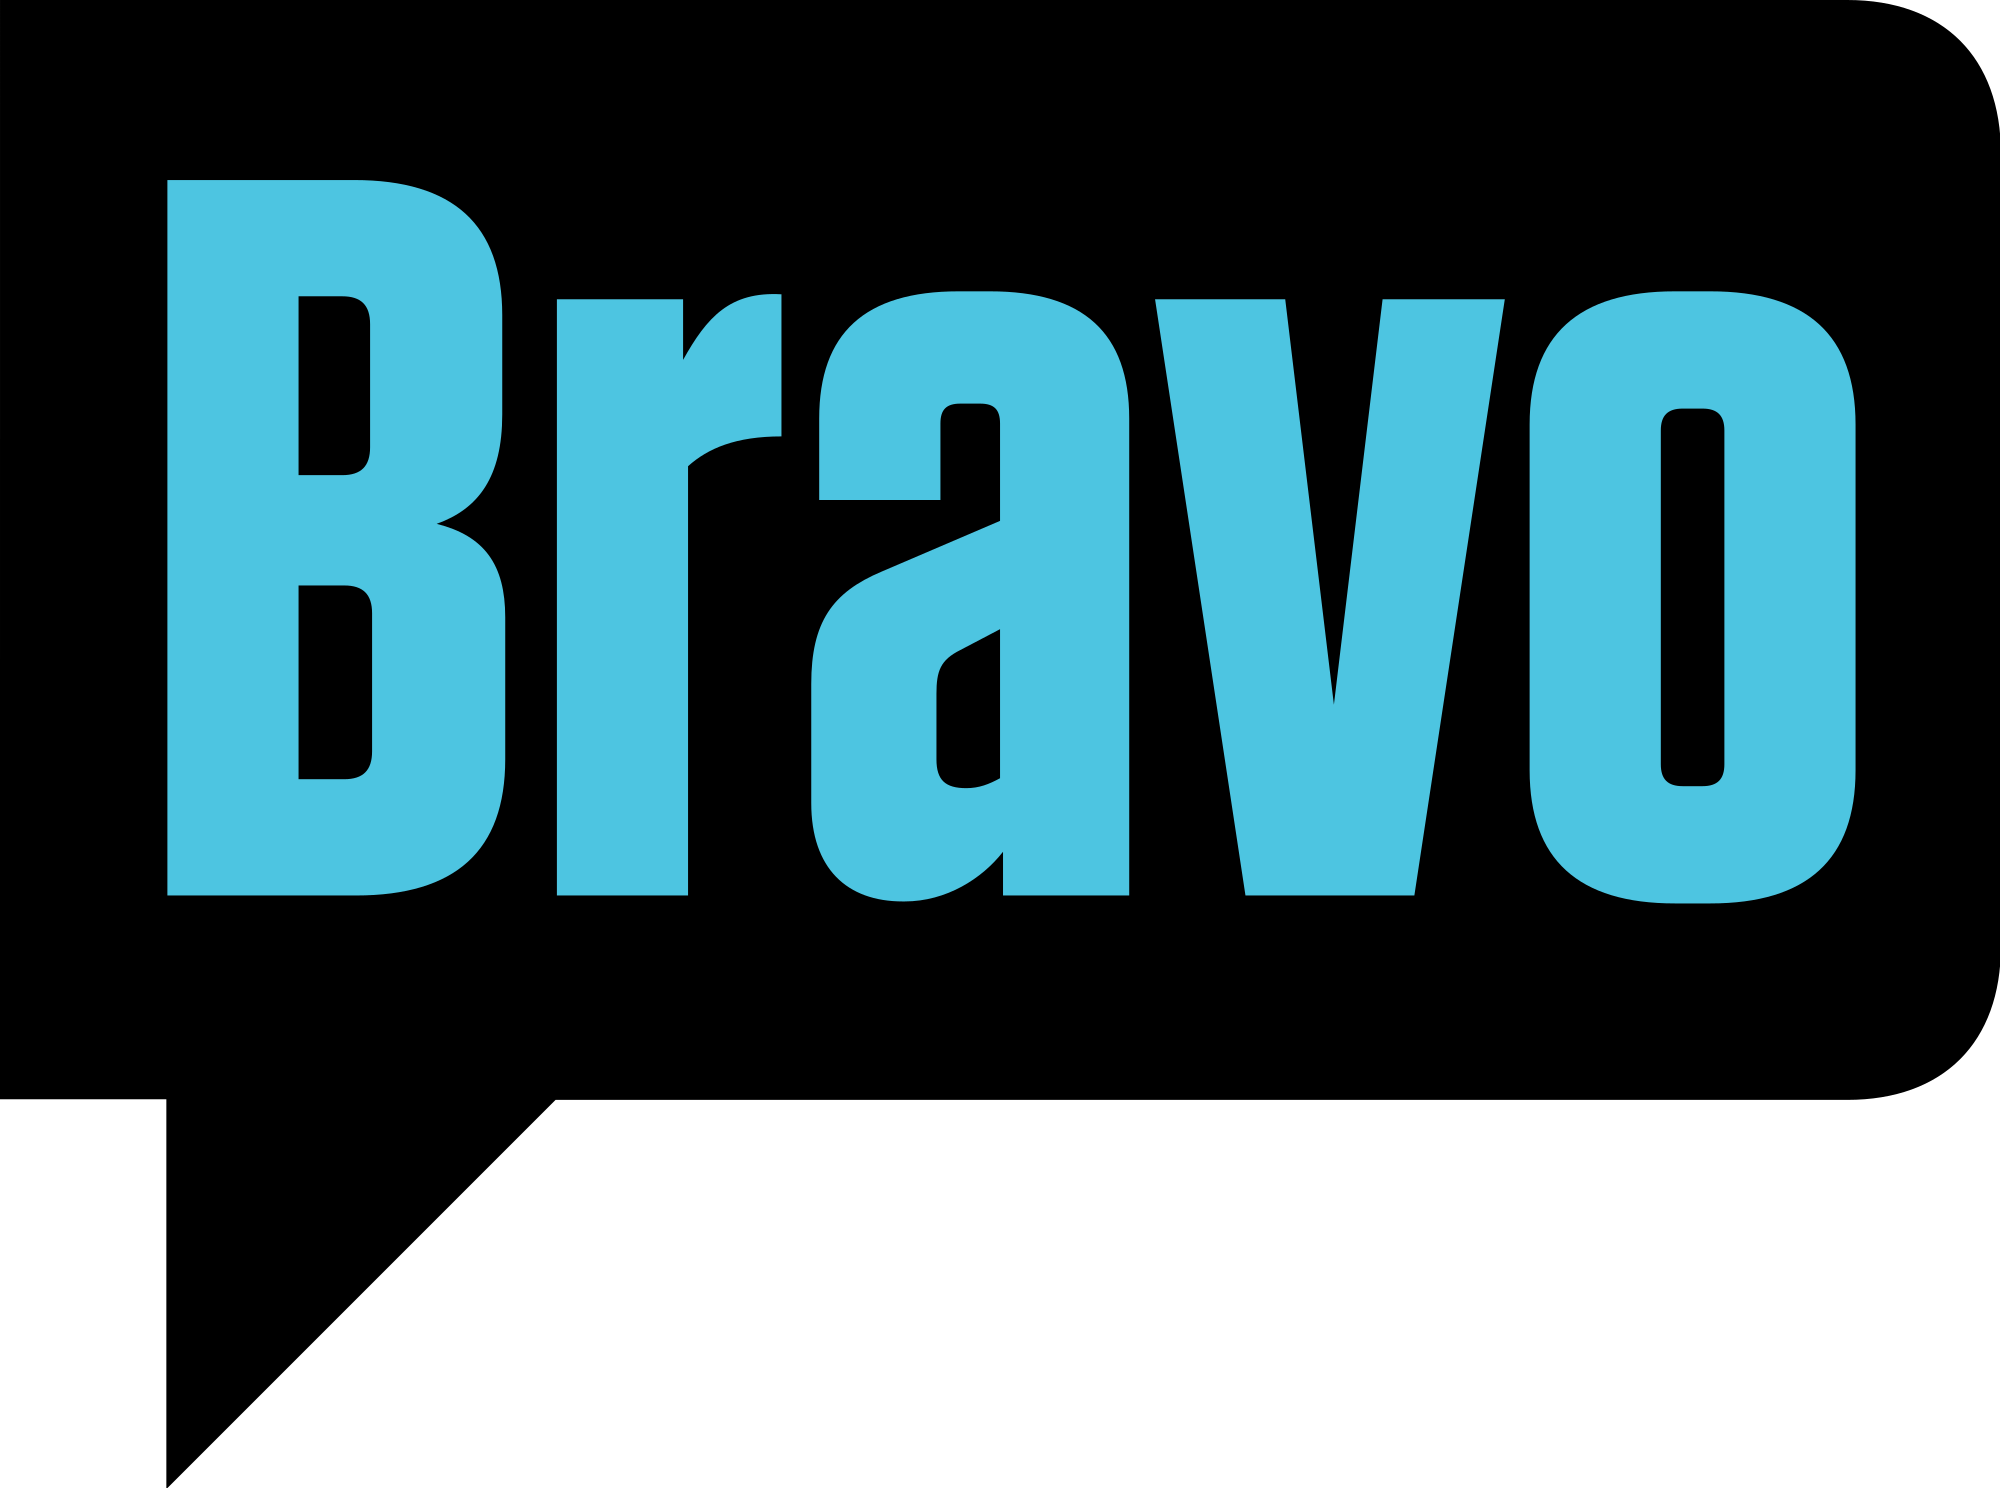 Bravo_TV.svg